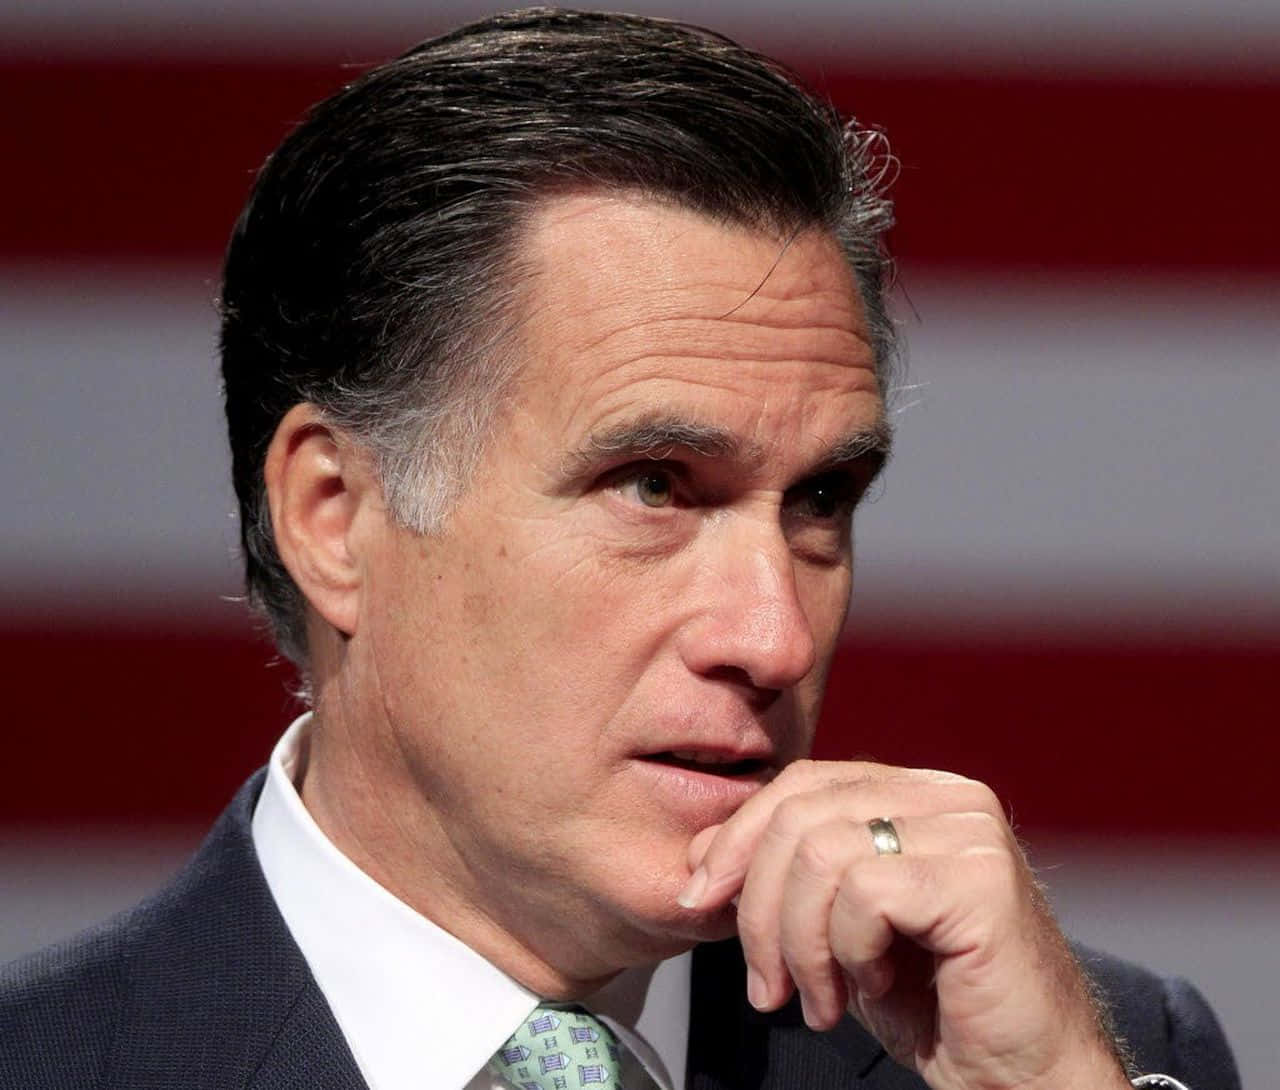 Mitt Romney Pensive Look Wallpaper